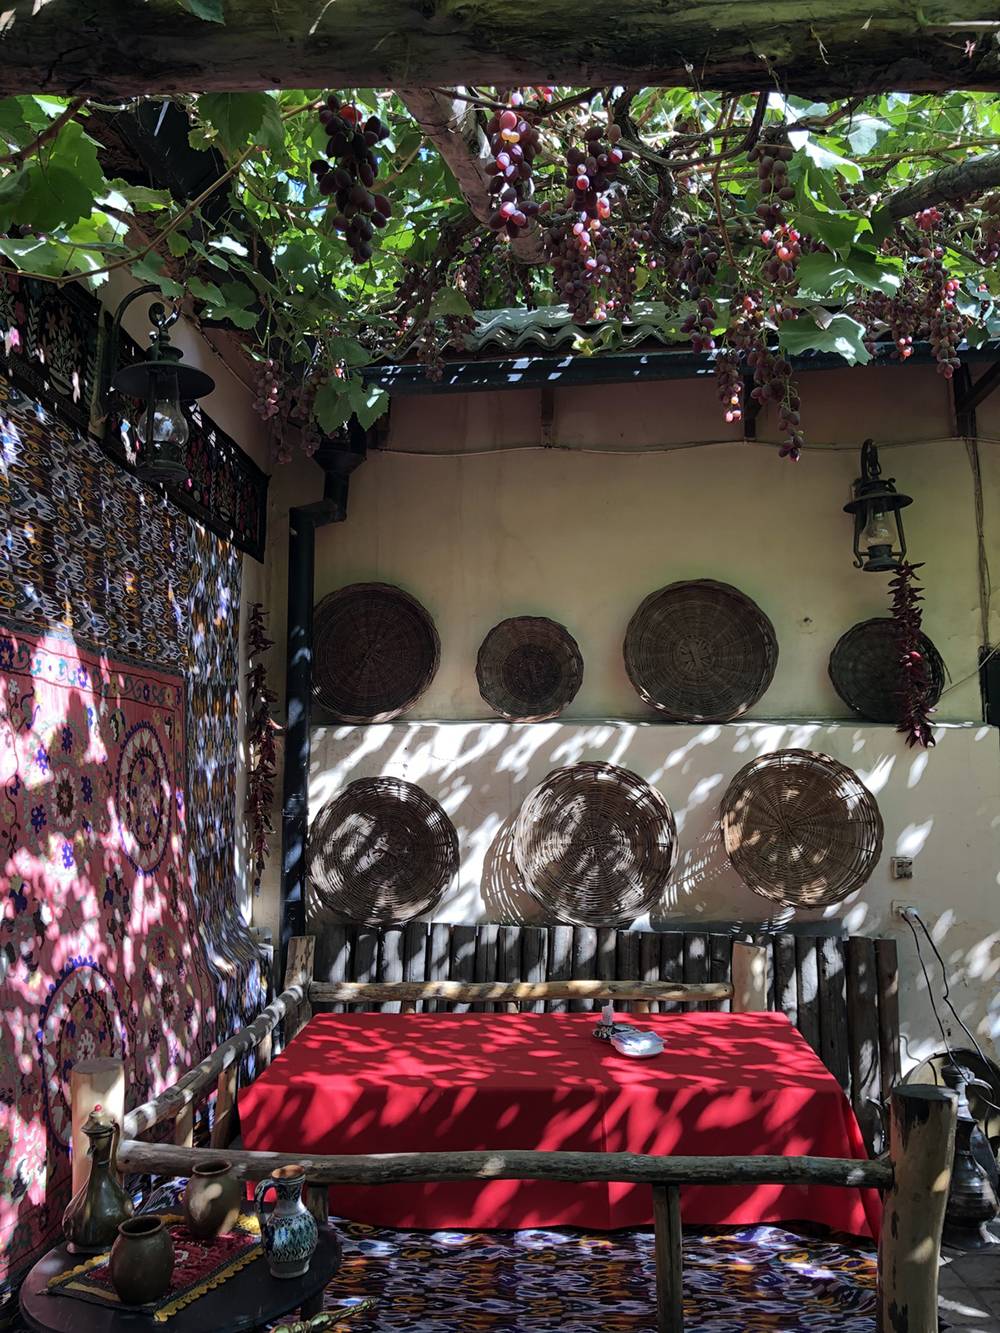 Топчан во дворе ресторана «Караван» под&nbsp;сенью винограда и августовскими бликами солнца